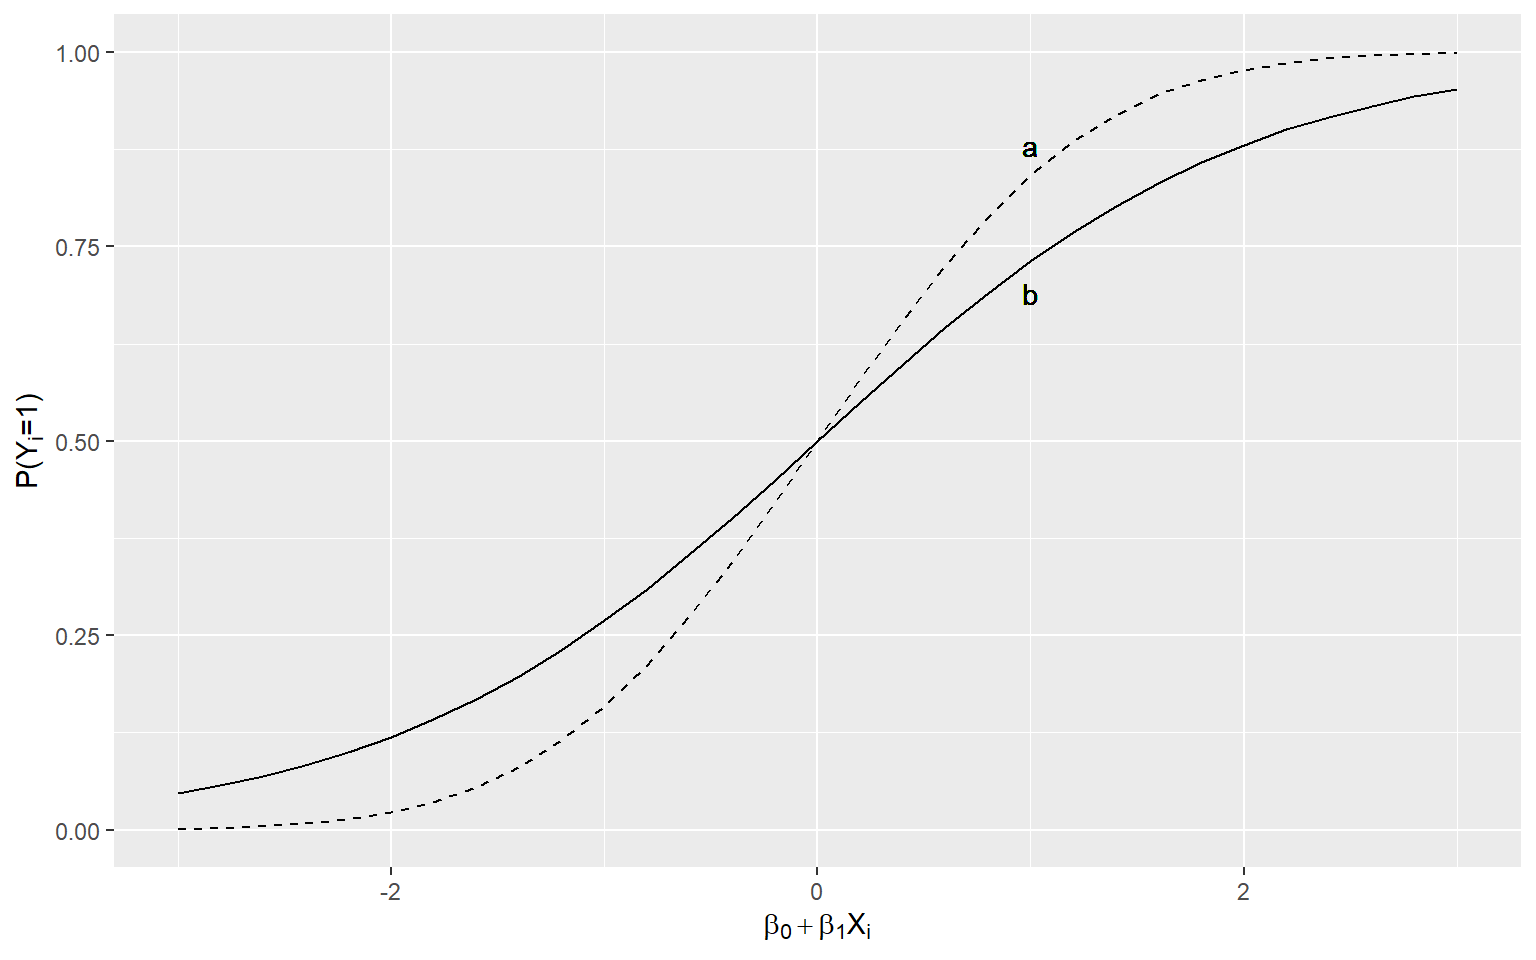 probit模型和logit模型下的累积概率曲线